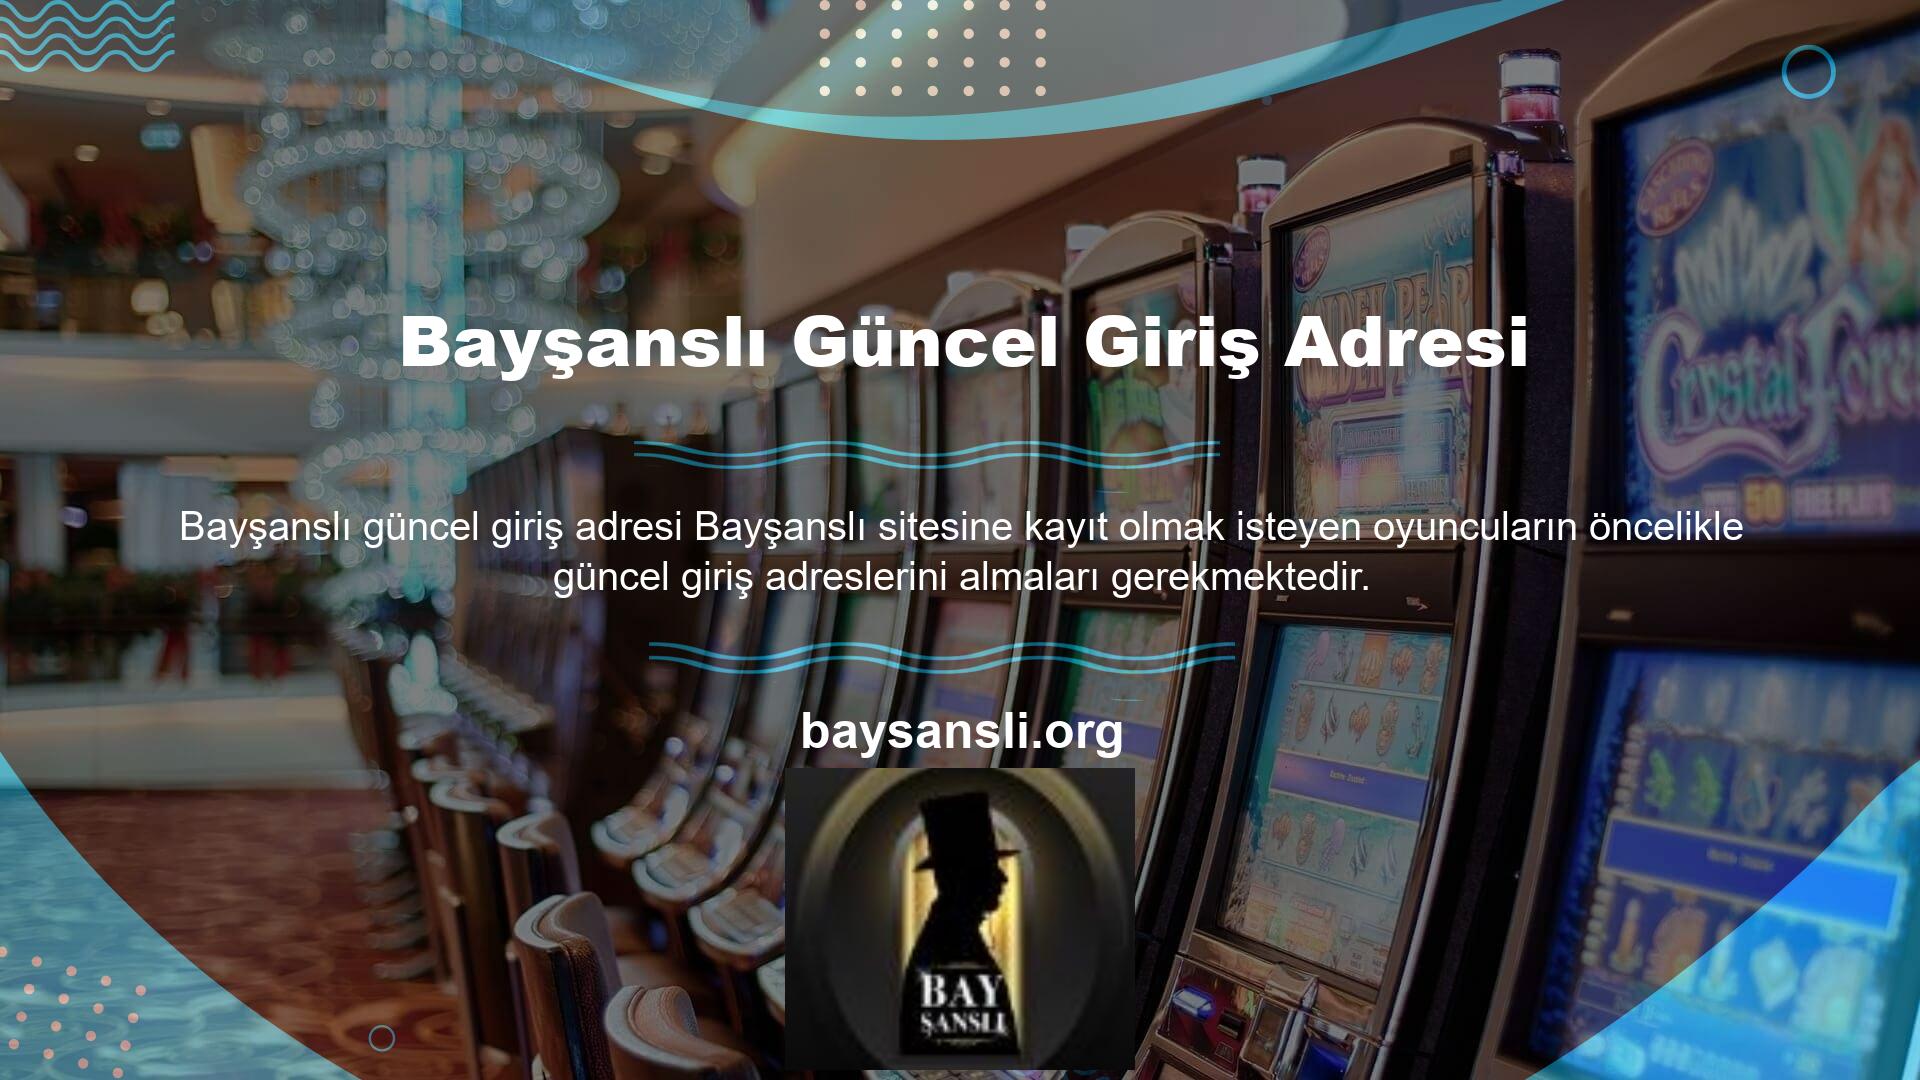 Online casino siteleri Türkiye'de yasal olarak faaliyet göstermemektedir ve site kullanıcılarının ve web sitelerinin güvenliğini sağlamak için zaman zaman adresler değişmektedir